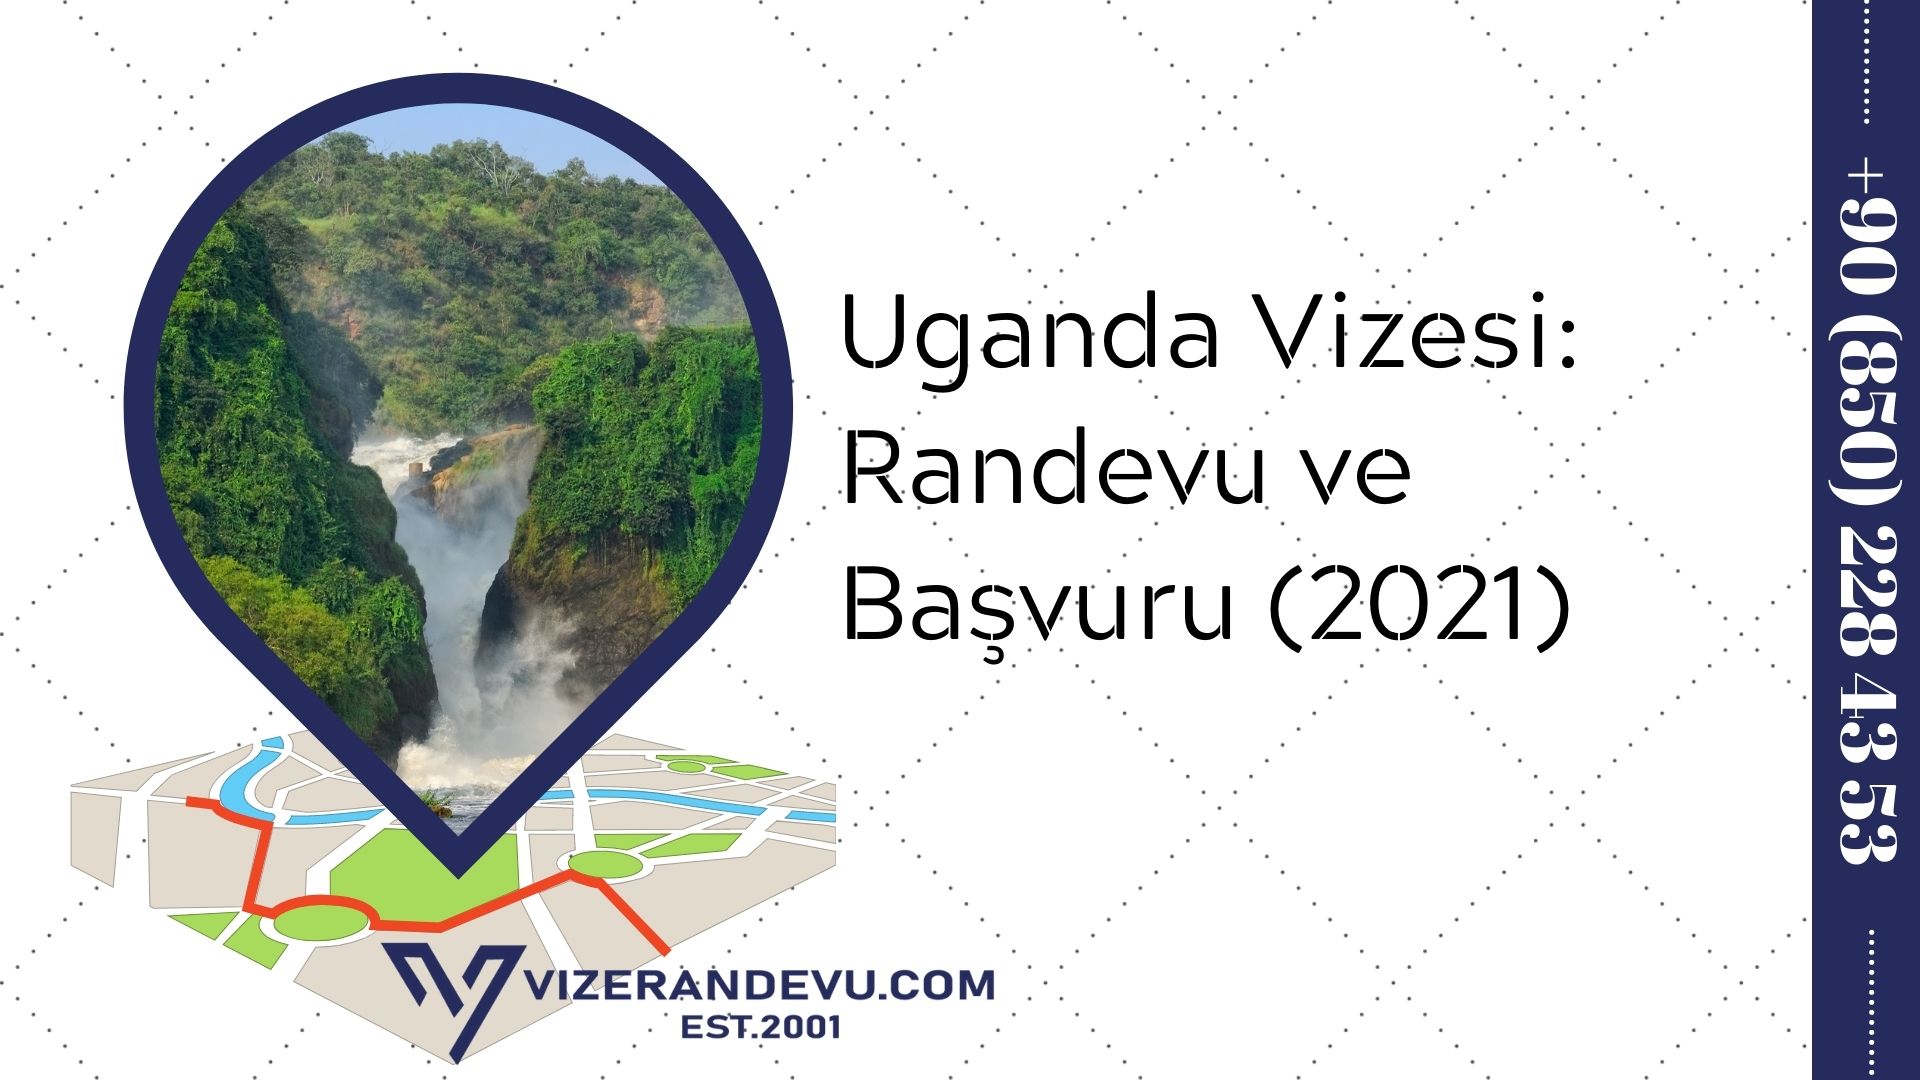 Uganda Vizesi: Randevu ve Başvuru (2021)